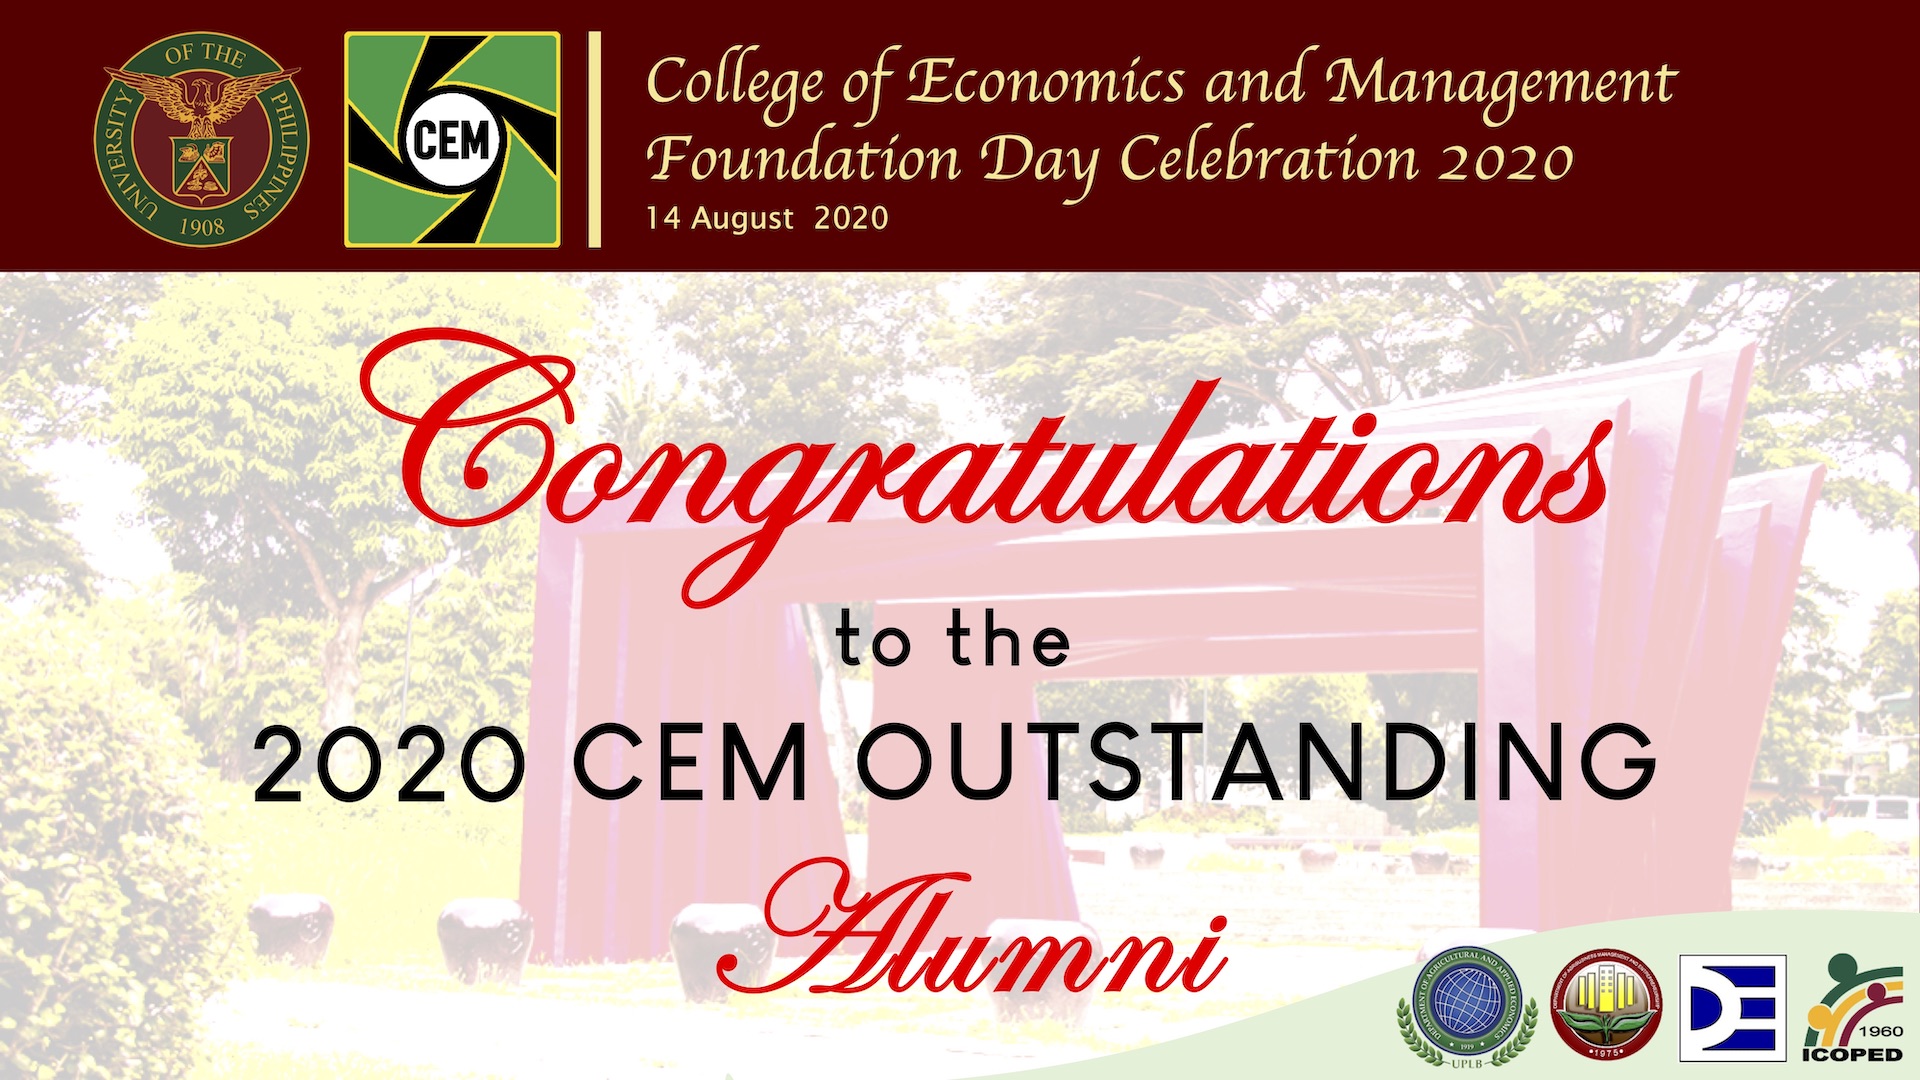 CEM awarded six Outstanding Alumni in 2020